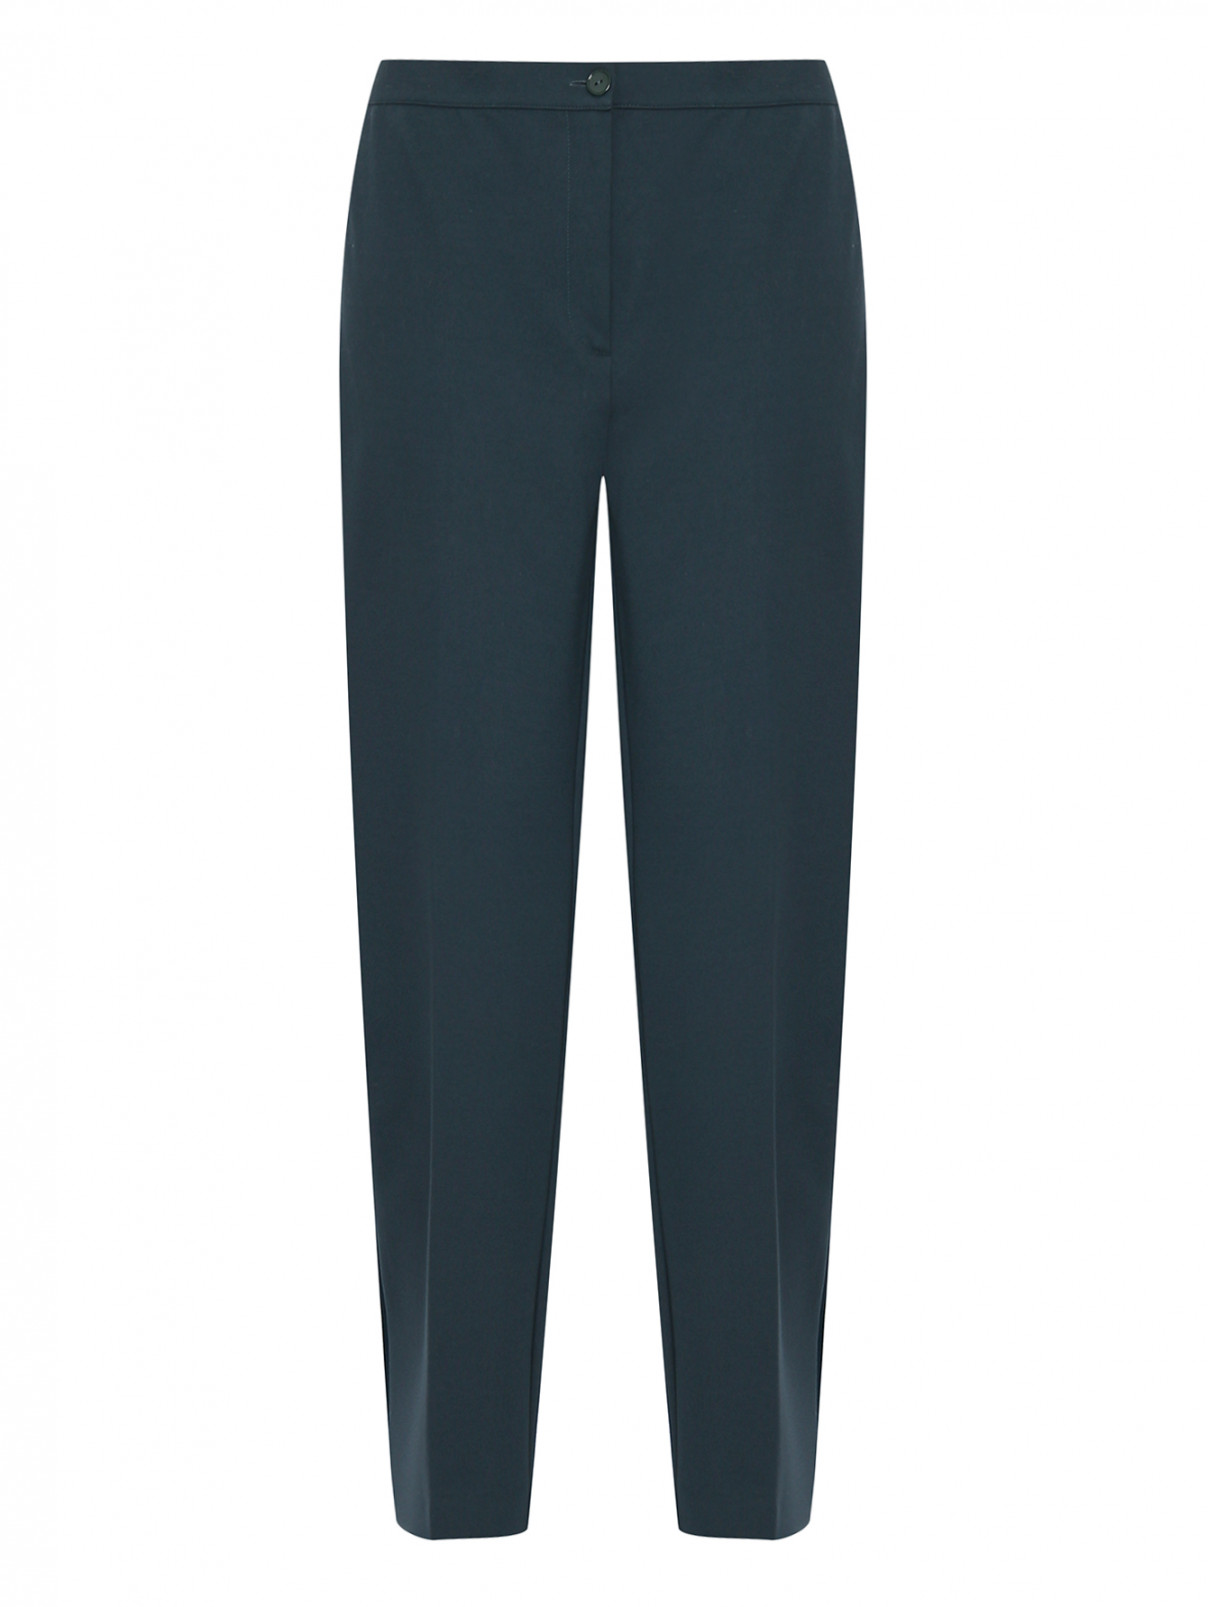 Трикотажные брюки со стрелками Persona by Marina Rinaldi  –  Общий вид  – Цвет:  Зеленый